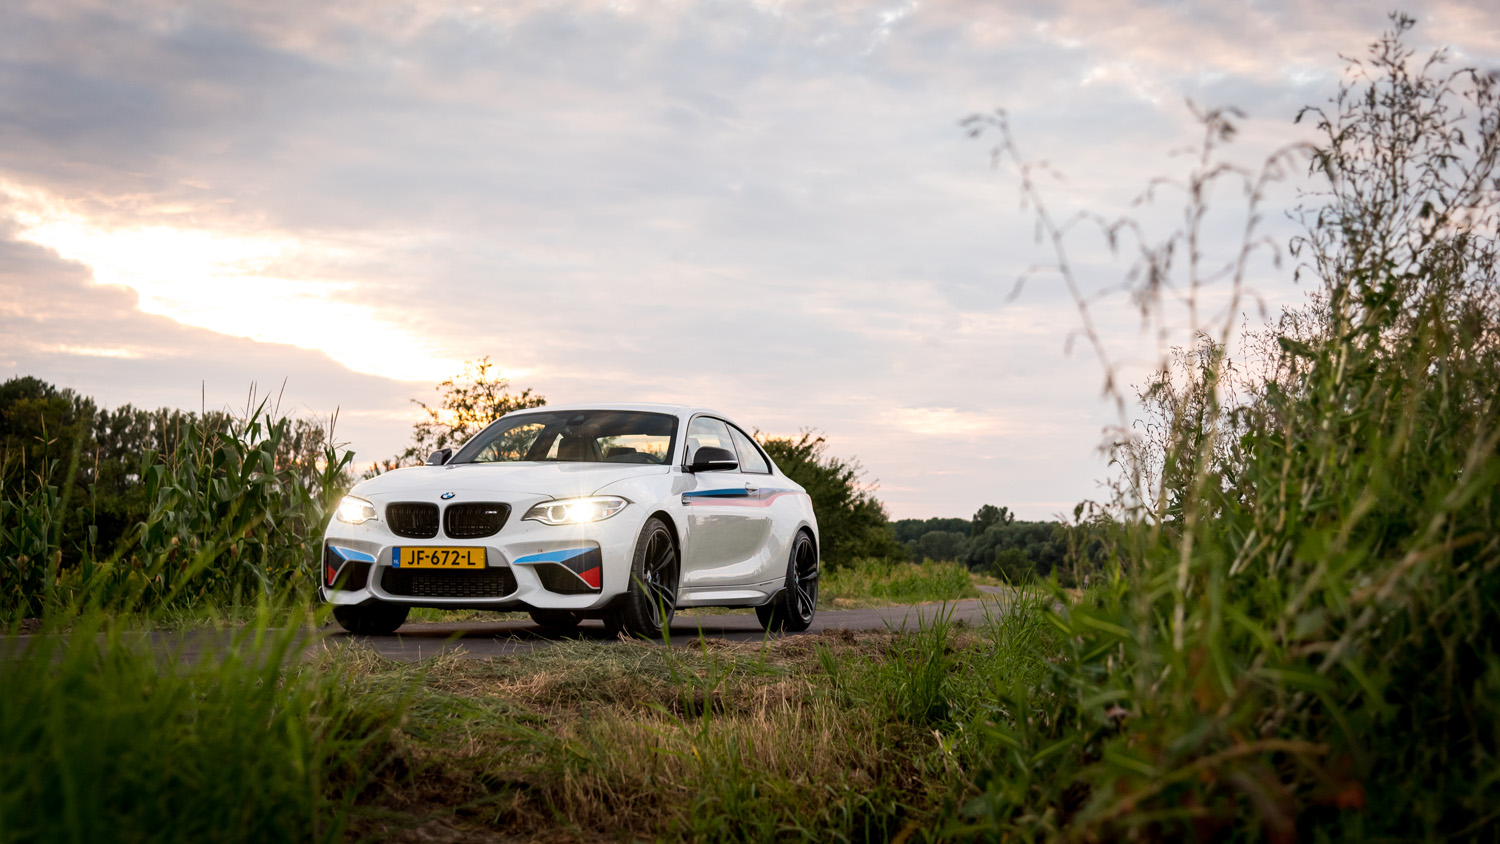 Gereden: BMW M2